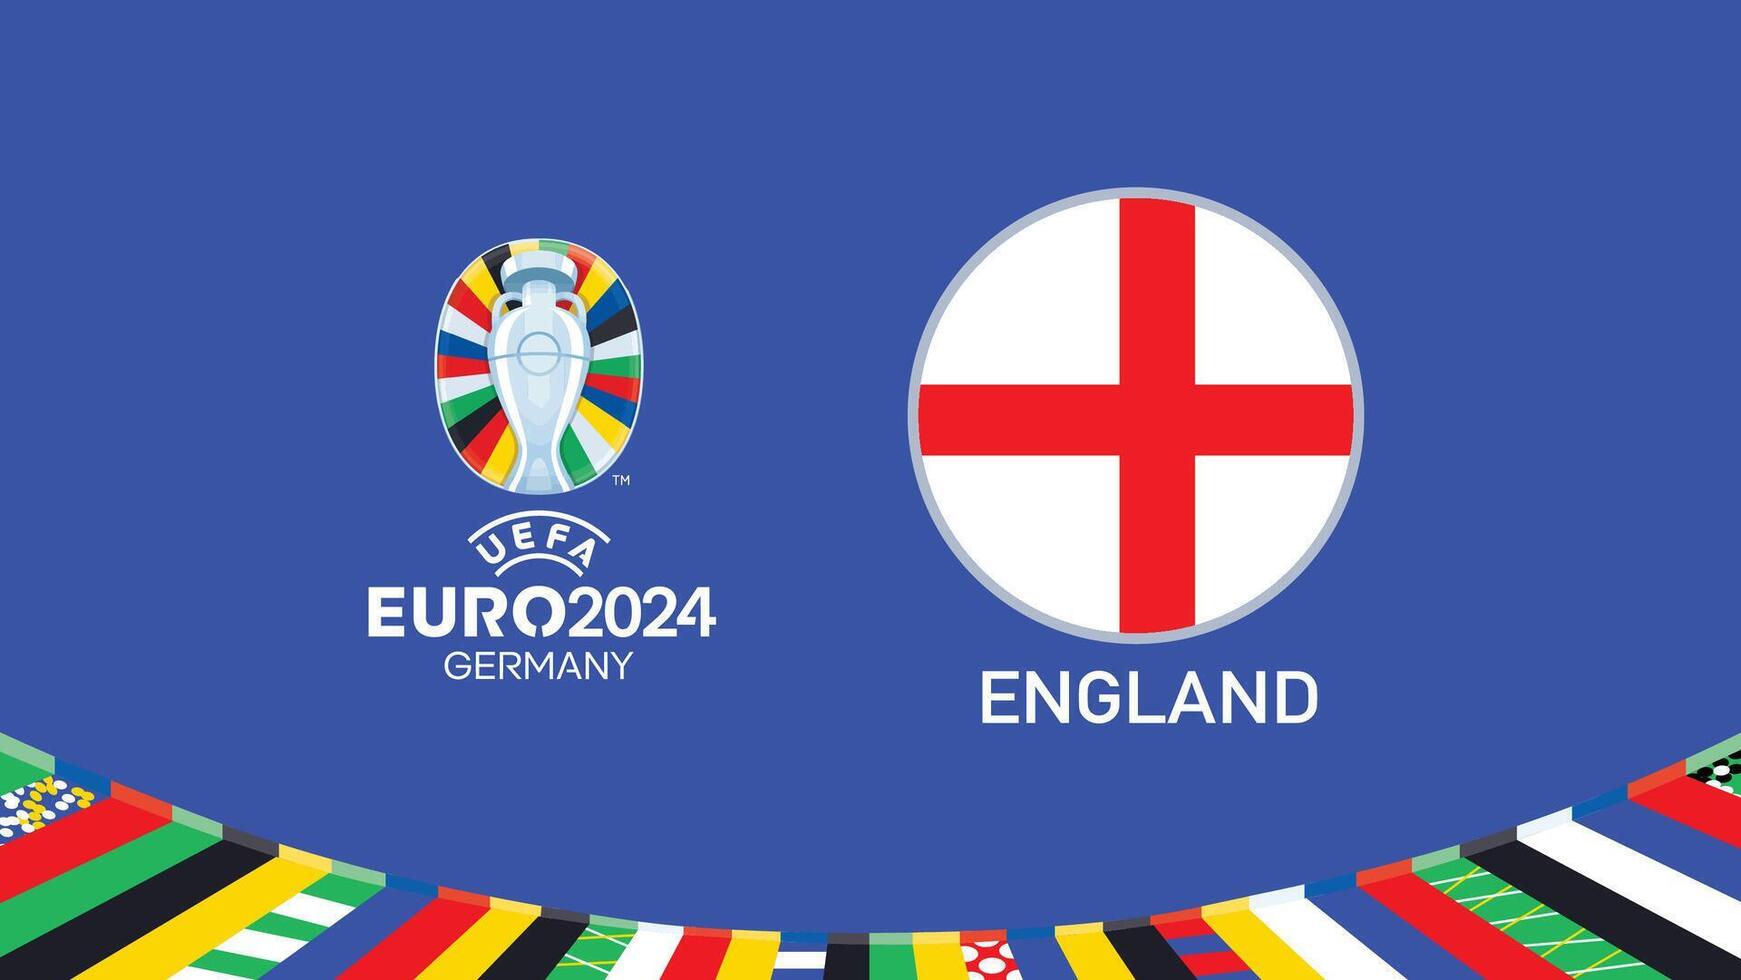 euro 2024 Tyskland England flagga emblem lag design med officiell symbol logotyp abstrakt länder europeisk fotboll illustration vektor